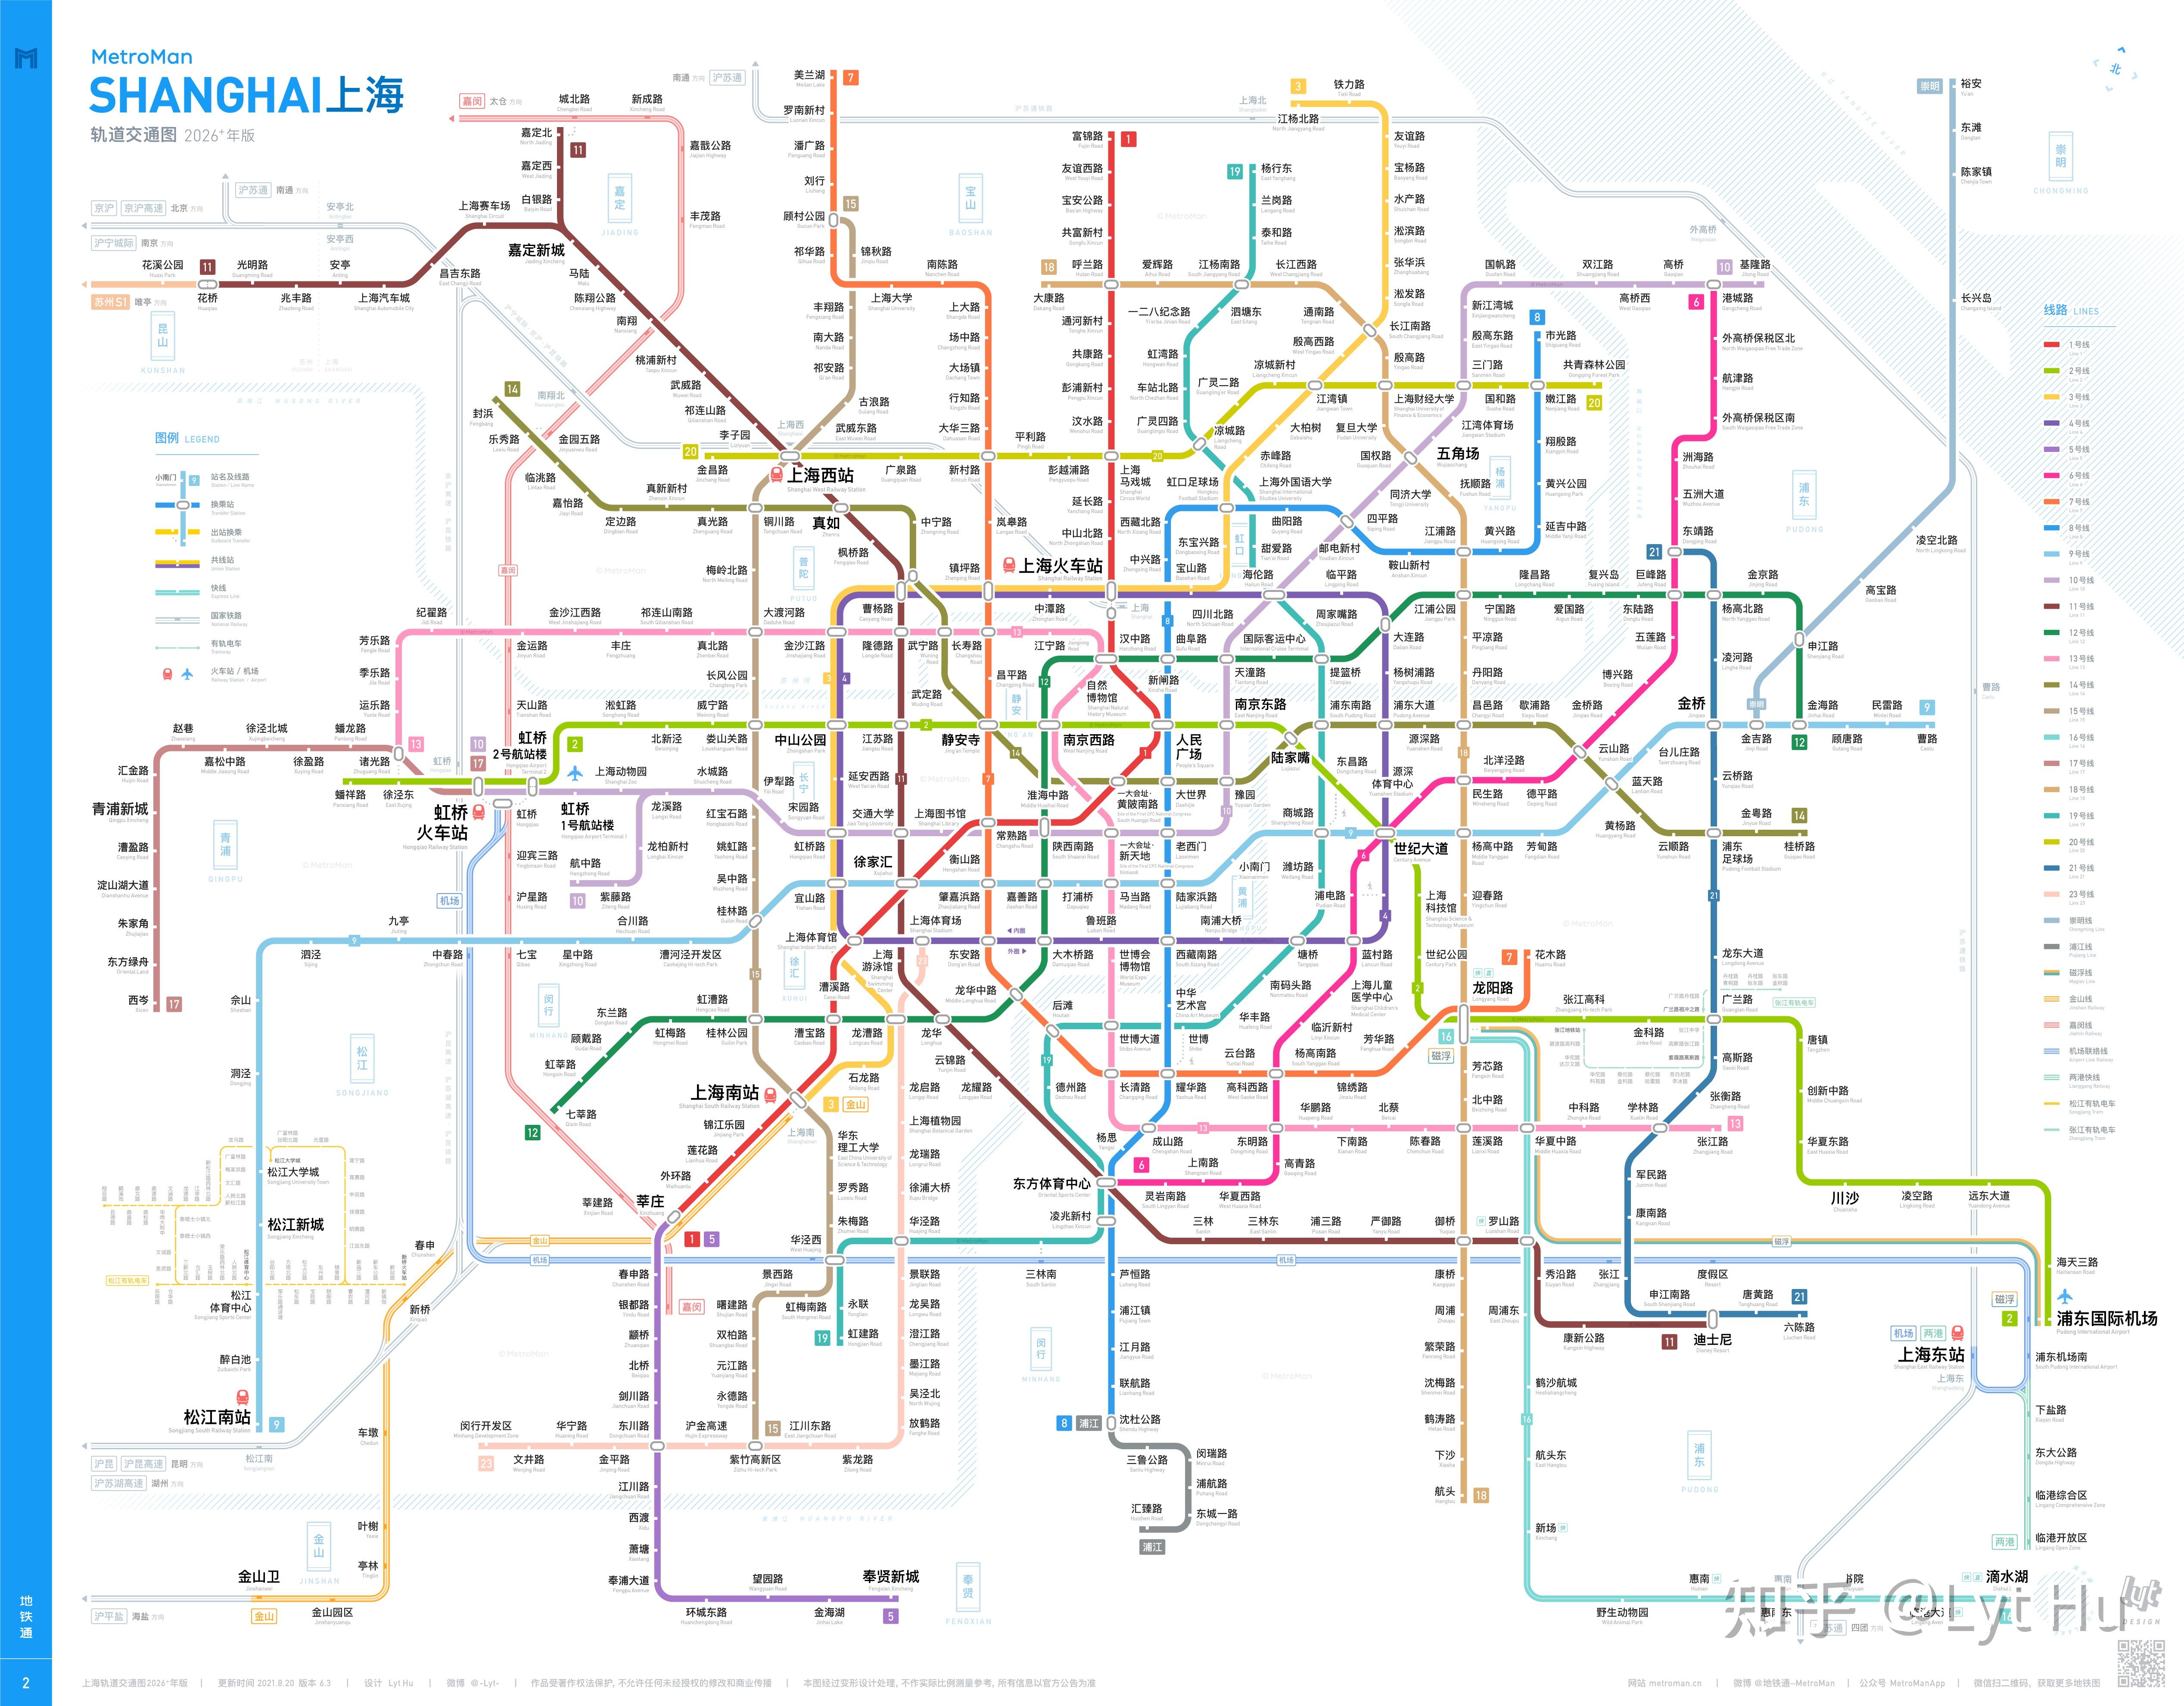 > 地铁通线路图 > 上海文件夹下地铁